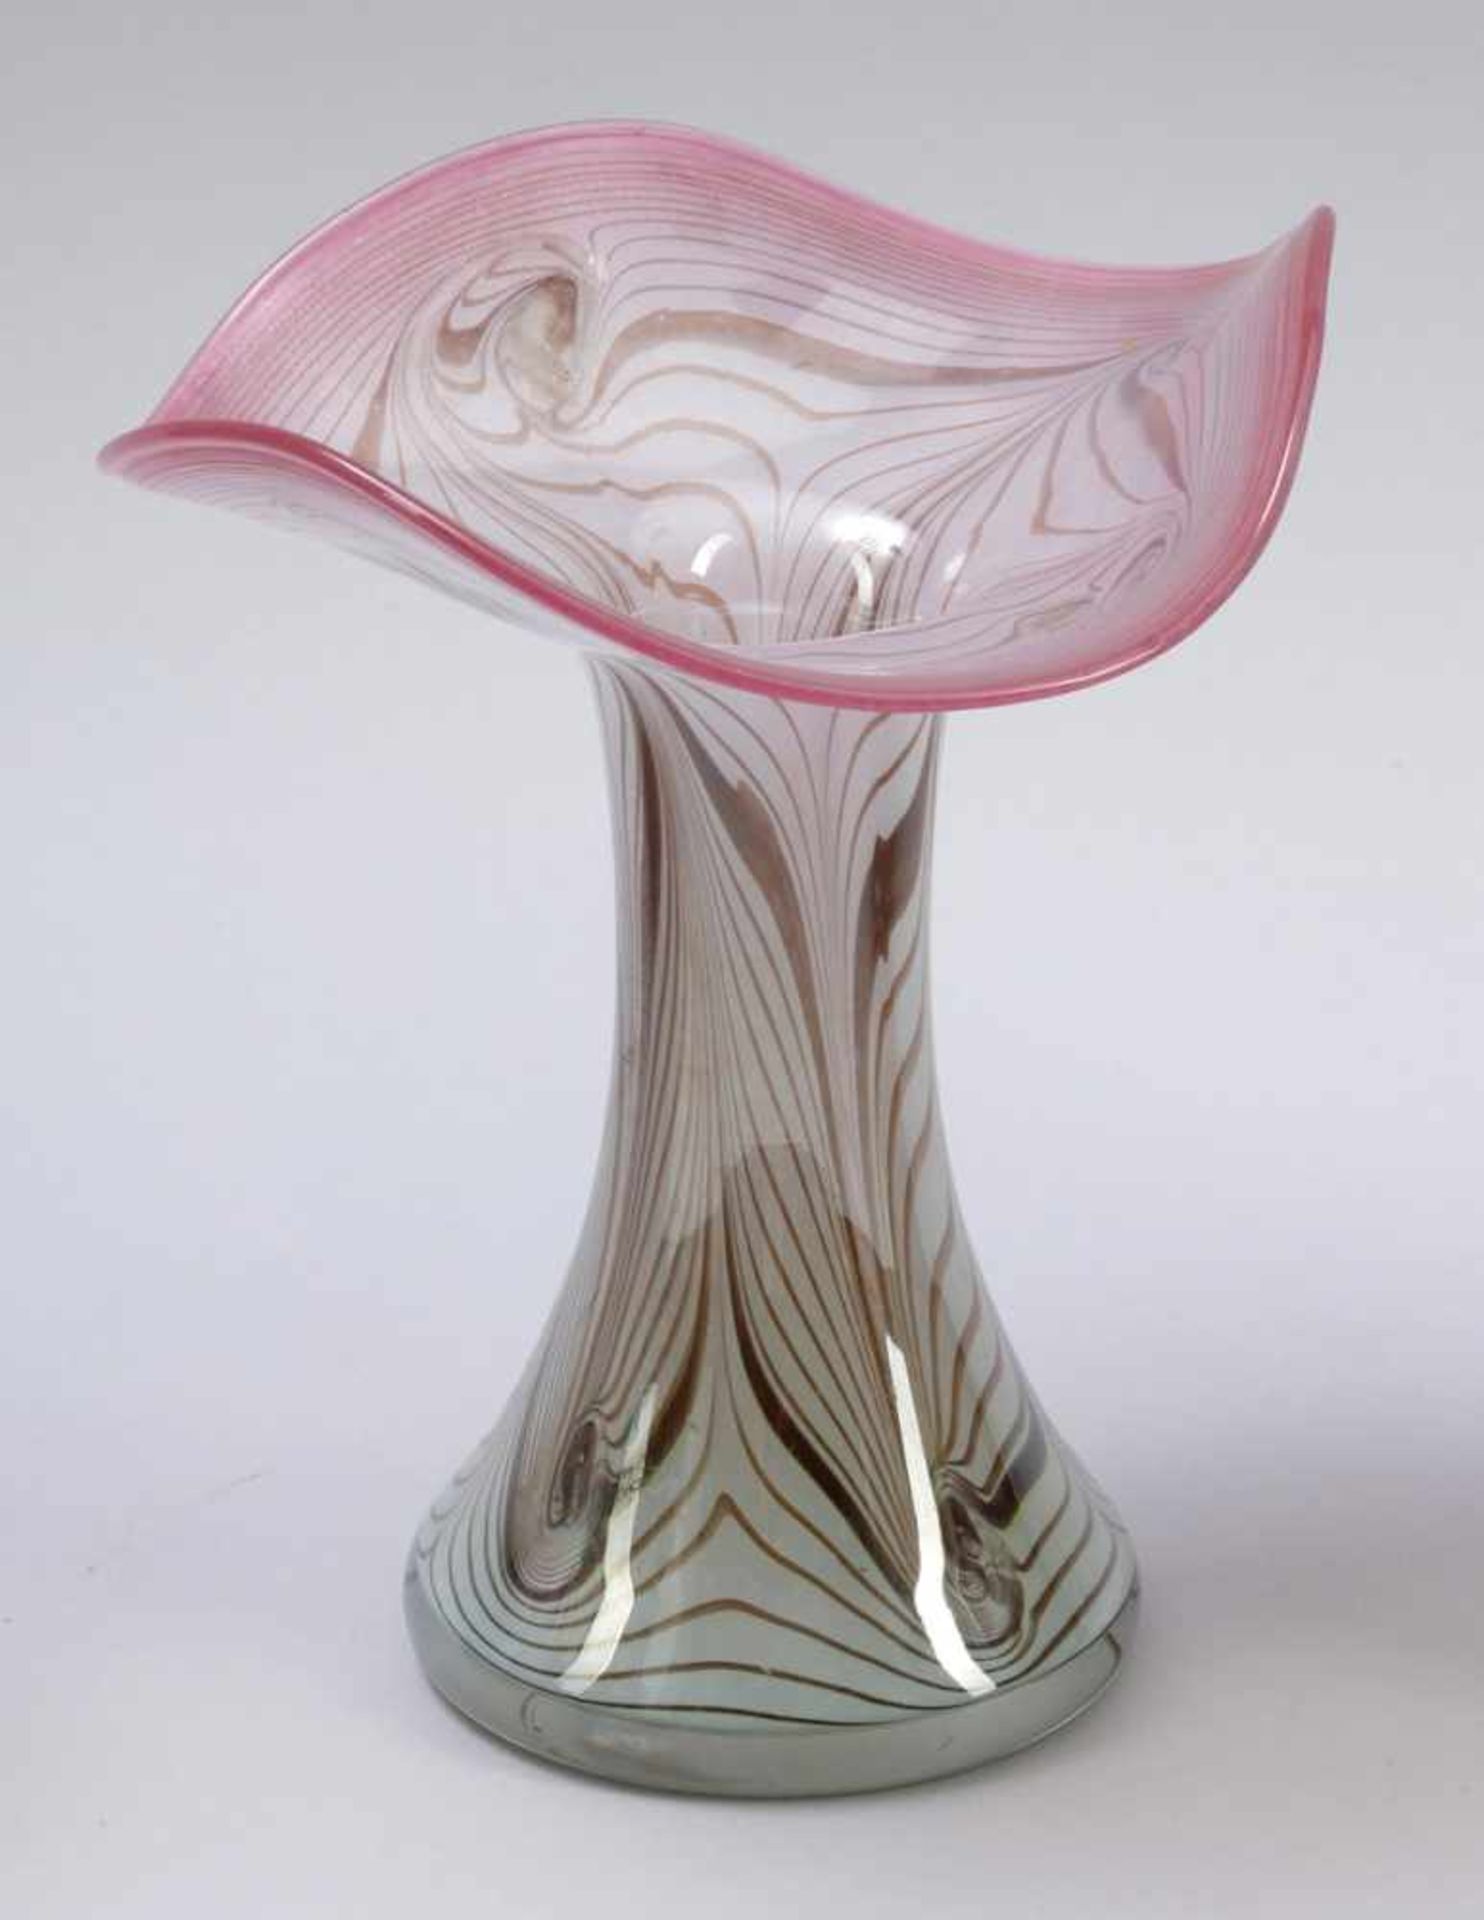 Vase mit gewelltem Rand Glashütte Eisch, Frauenau 1984. Farbloses Glas, mit opakweißem